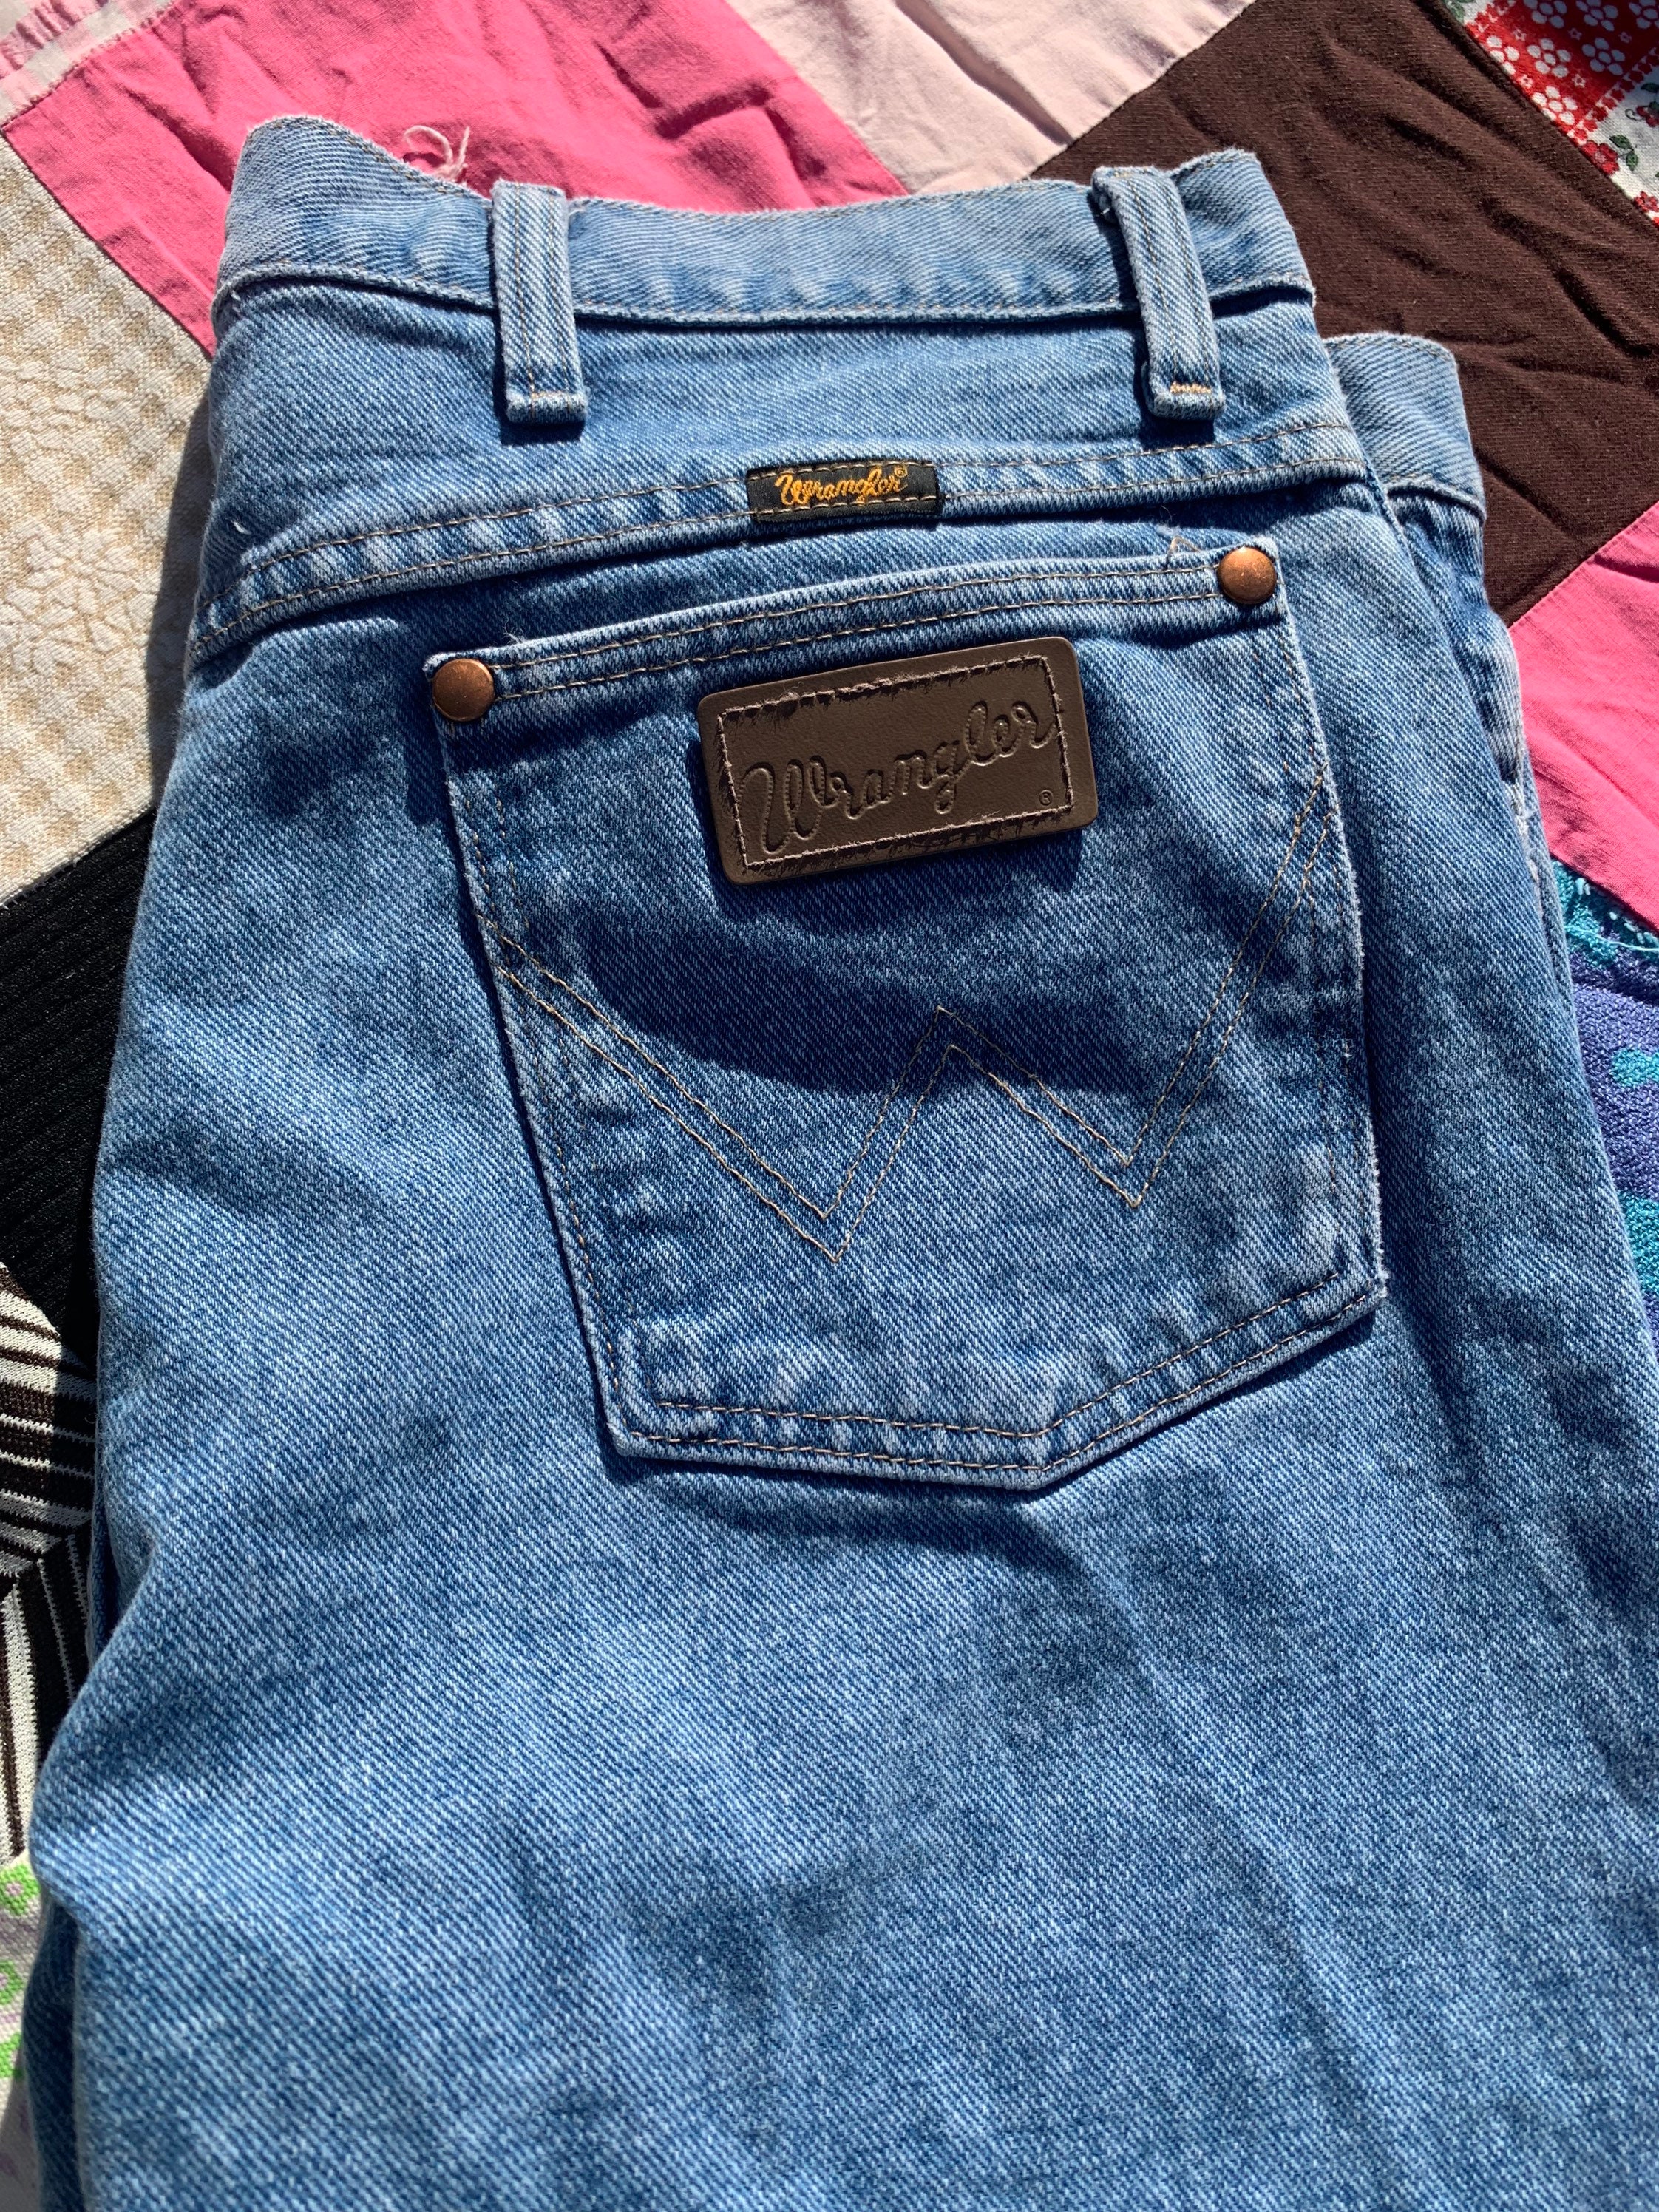 Wrangler Denim Jeans - Etsy New Zealand